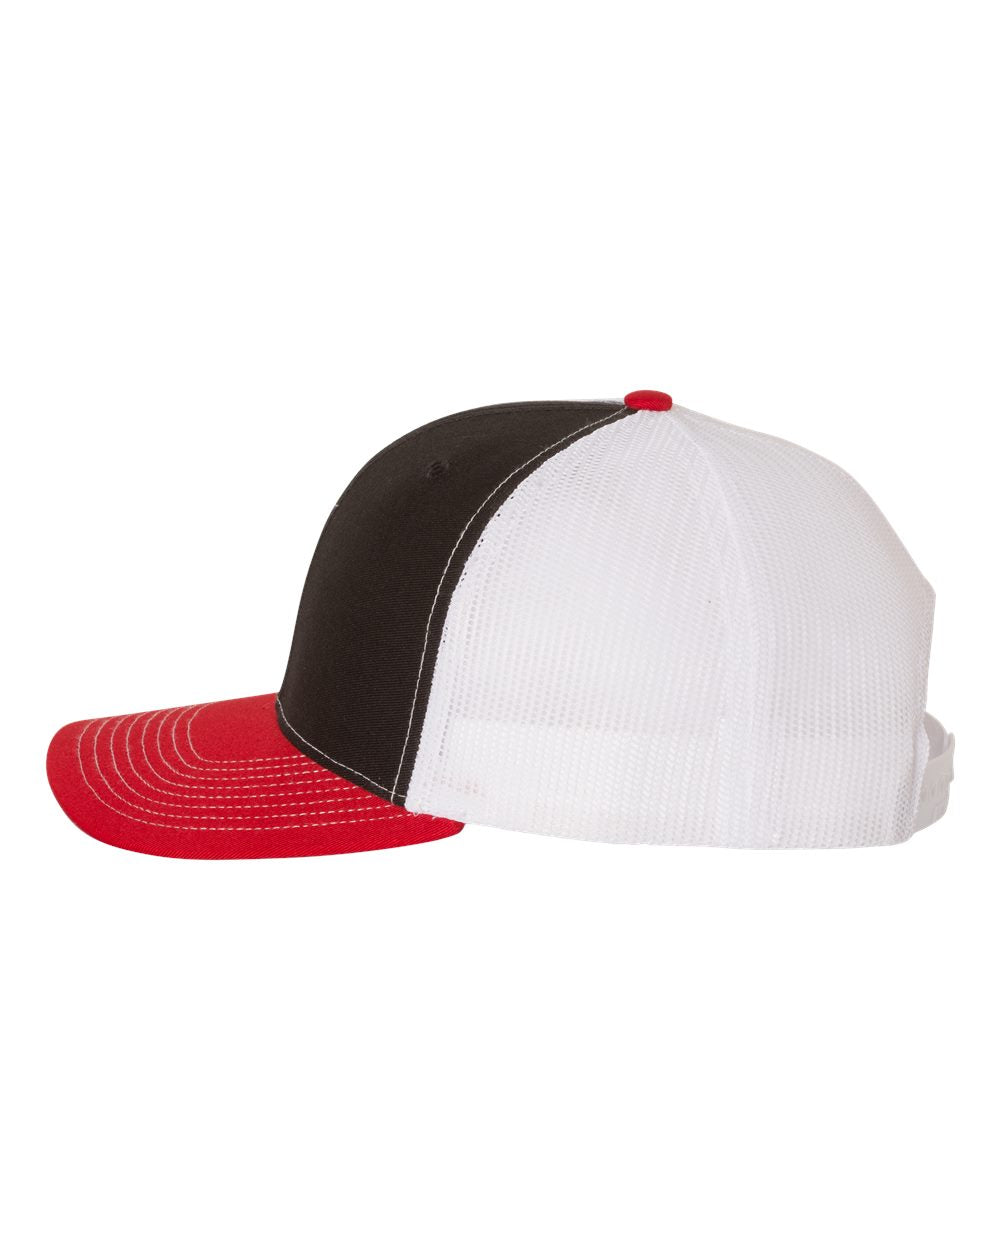 Richardson Adjustable Customized Snapback Trucker Caps, Black White Red